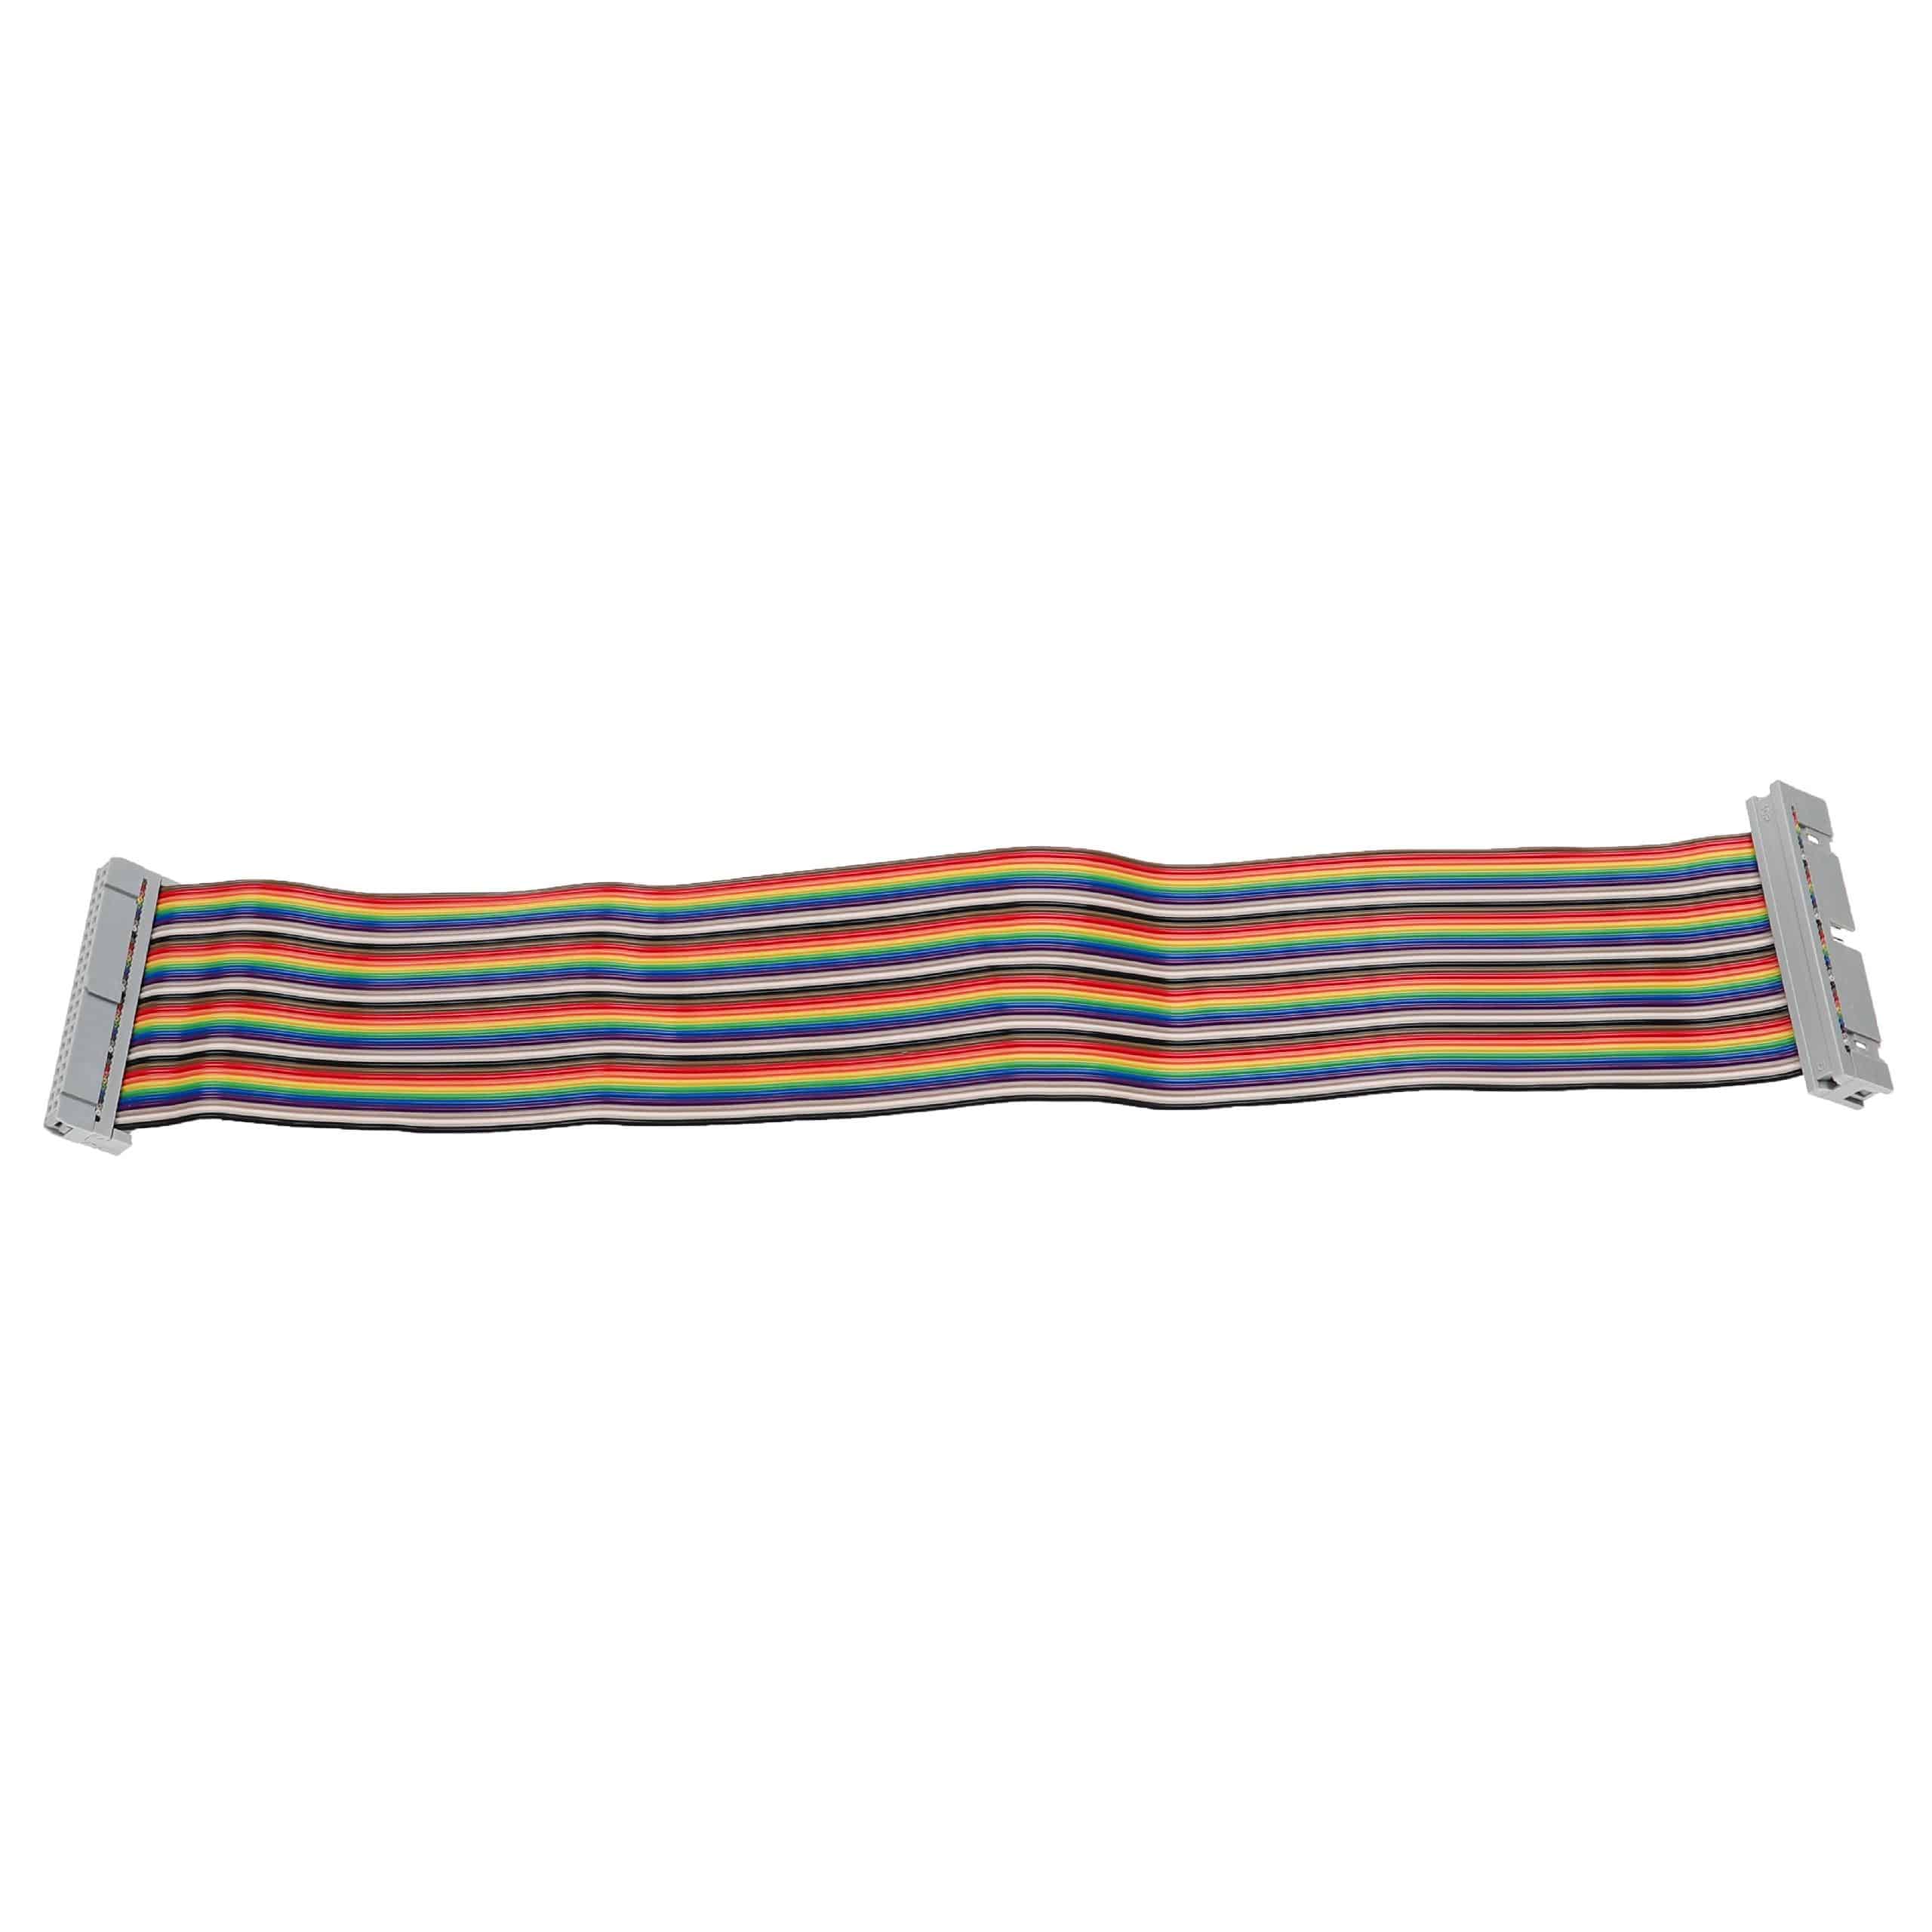 GPIO Kabel 40 Pin passend für Raspberry Pi - GPIO Verlängerung Mehrfarbig, 30 cm